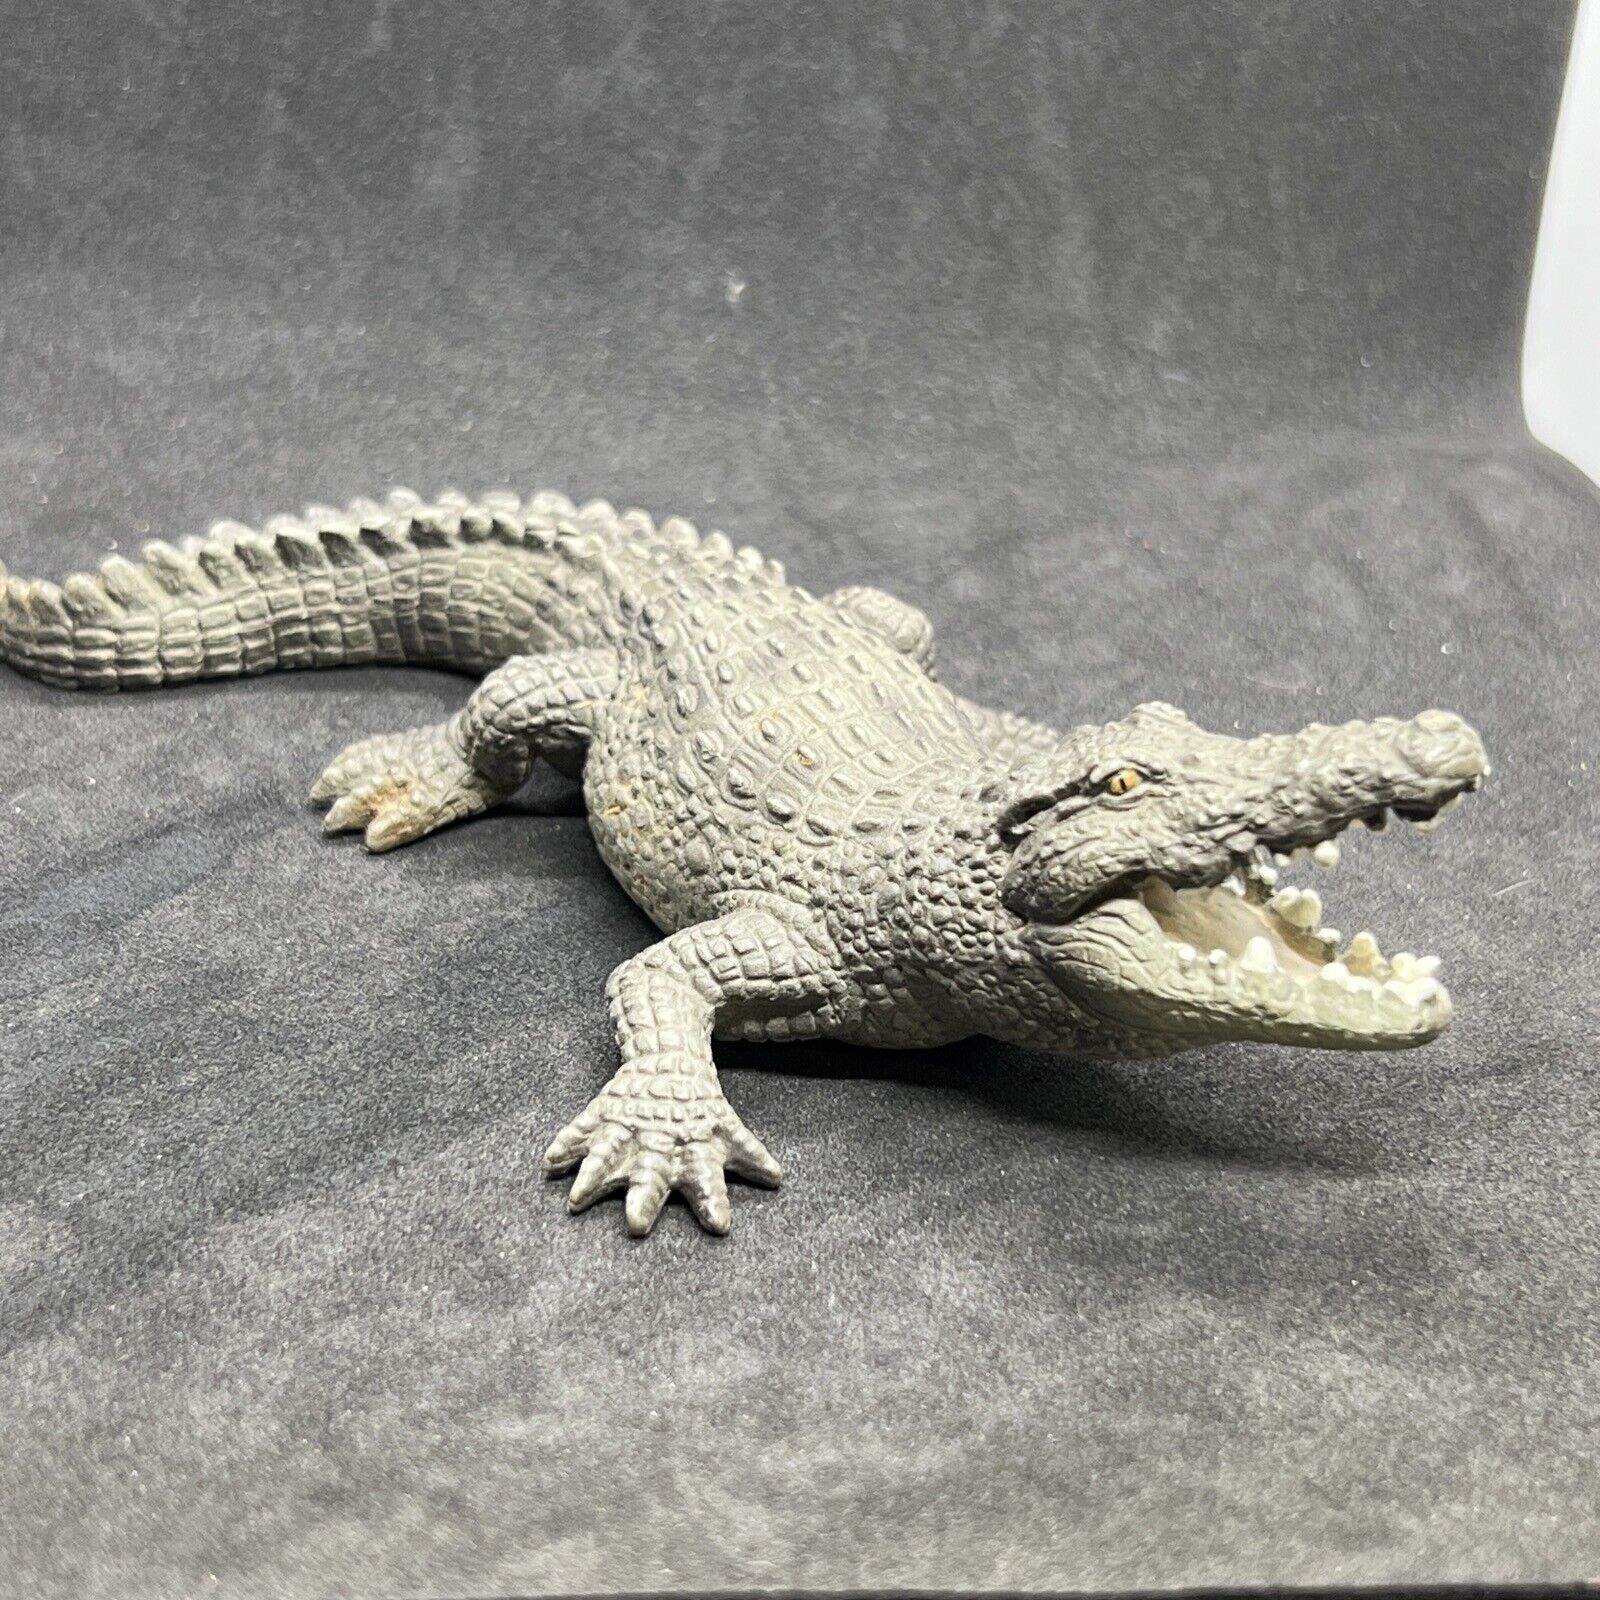 Schleich CROCODILE 2007 Animal Figure Retired 7” Alligator Reptile Croc